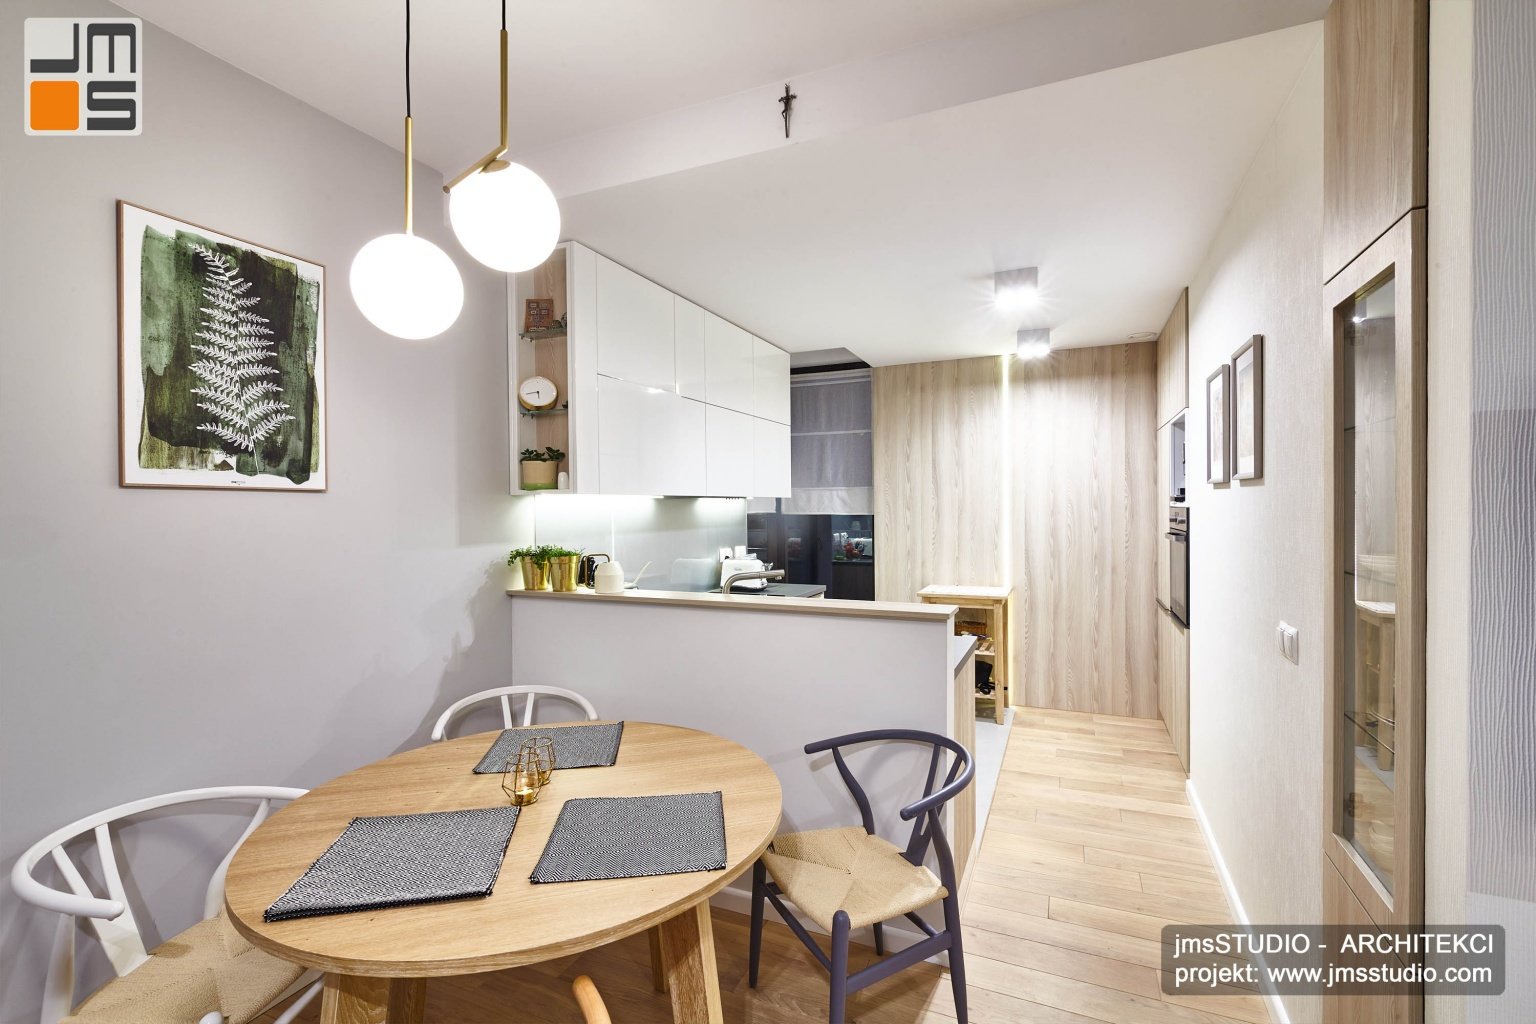 Projekt wnętrz kuchni to bardzo proste meble w jasnych kolorach biel i drewno z pomysłem na ścianę z drewna